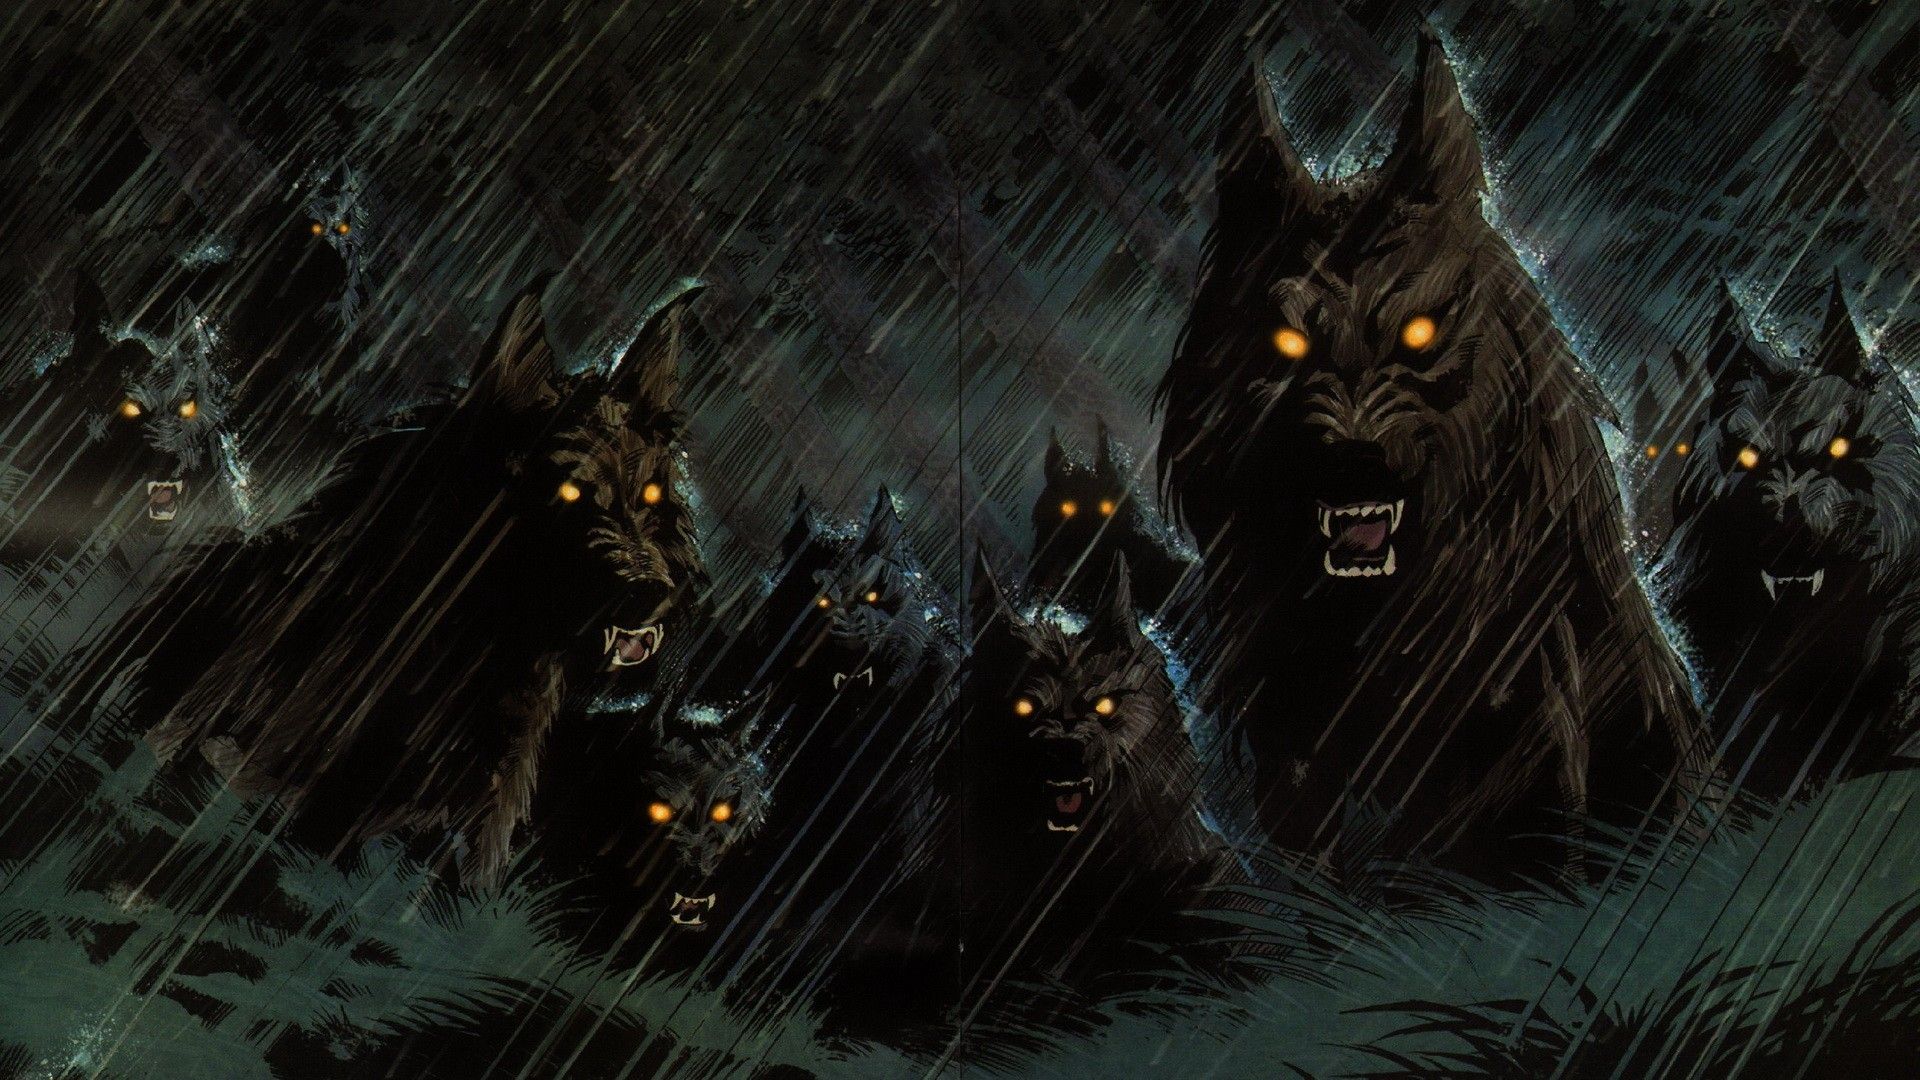 Dark werewolf hellhound animals wolf wolves fangs demons evil